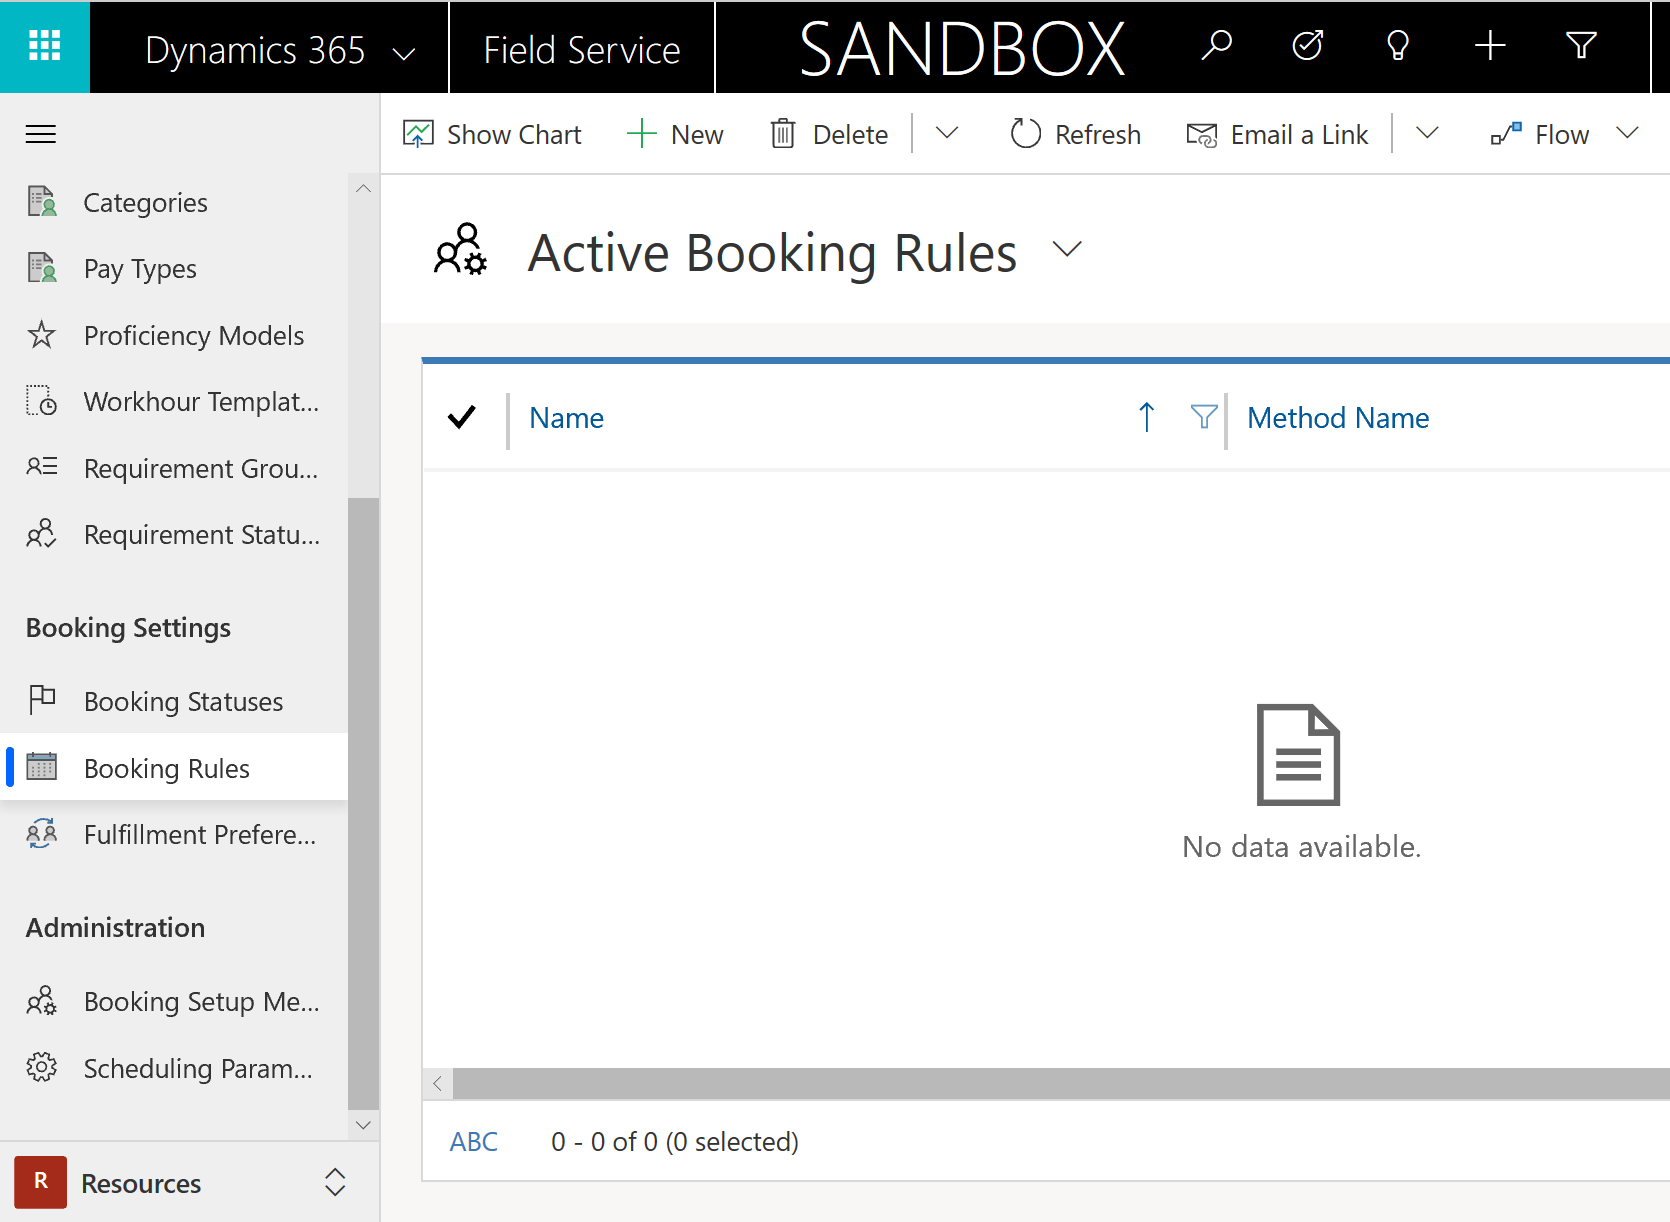 Снимок экрана со списком активных правил резервирования в Field Service.